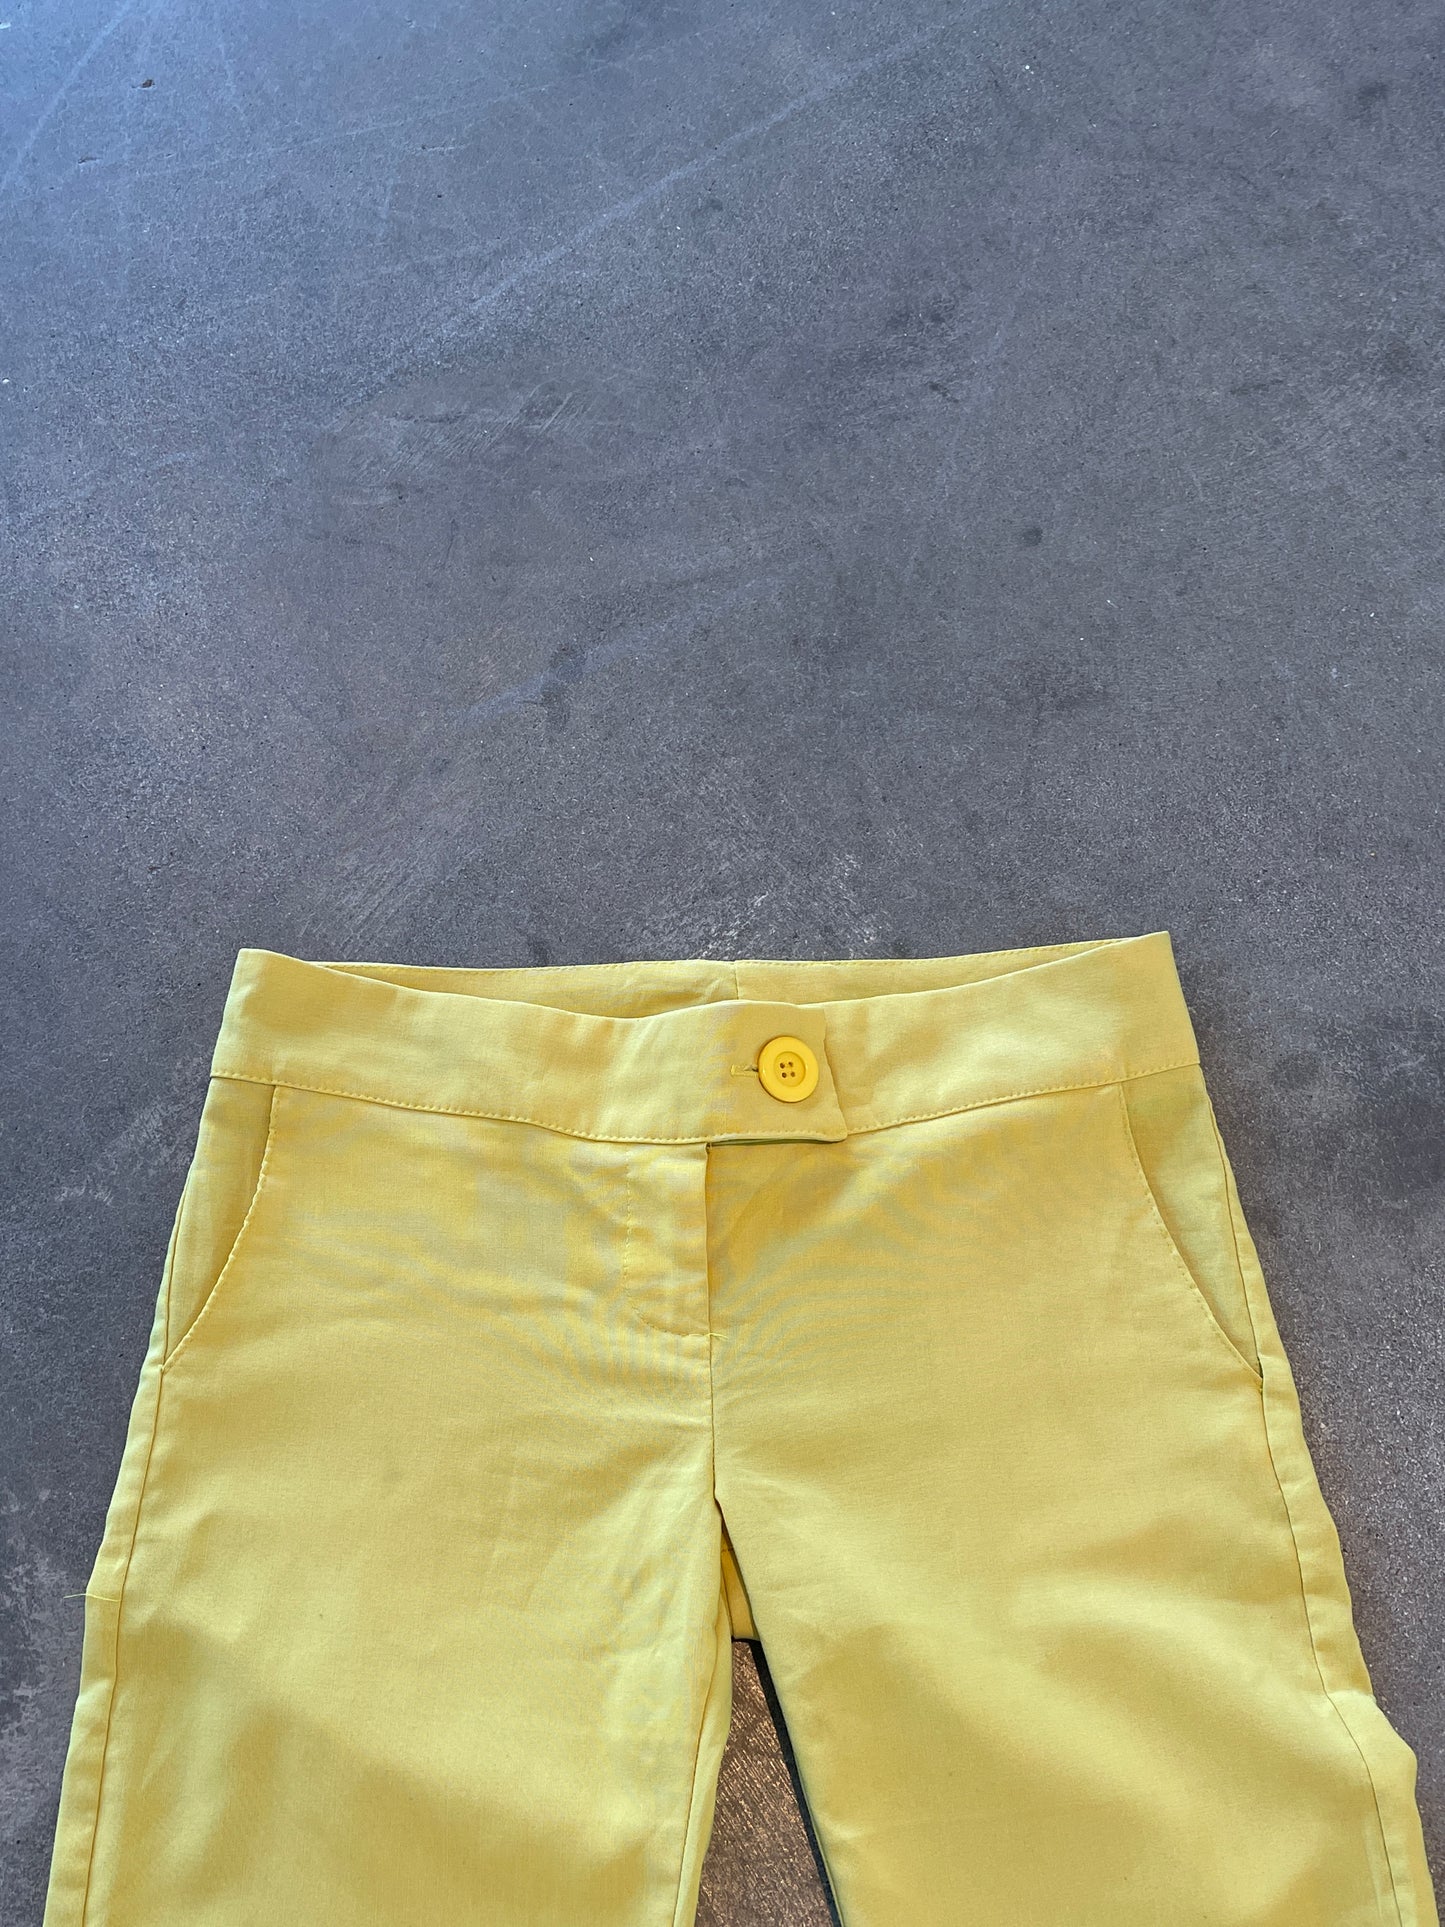 Yellow pants - L